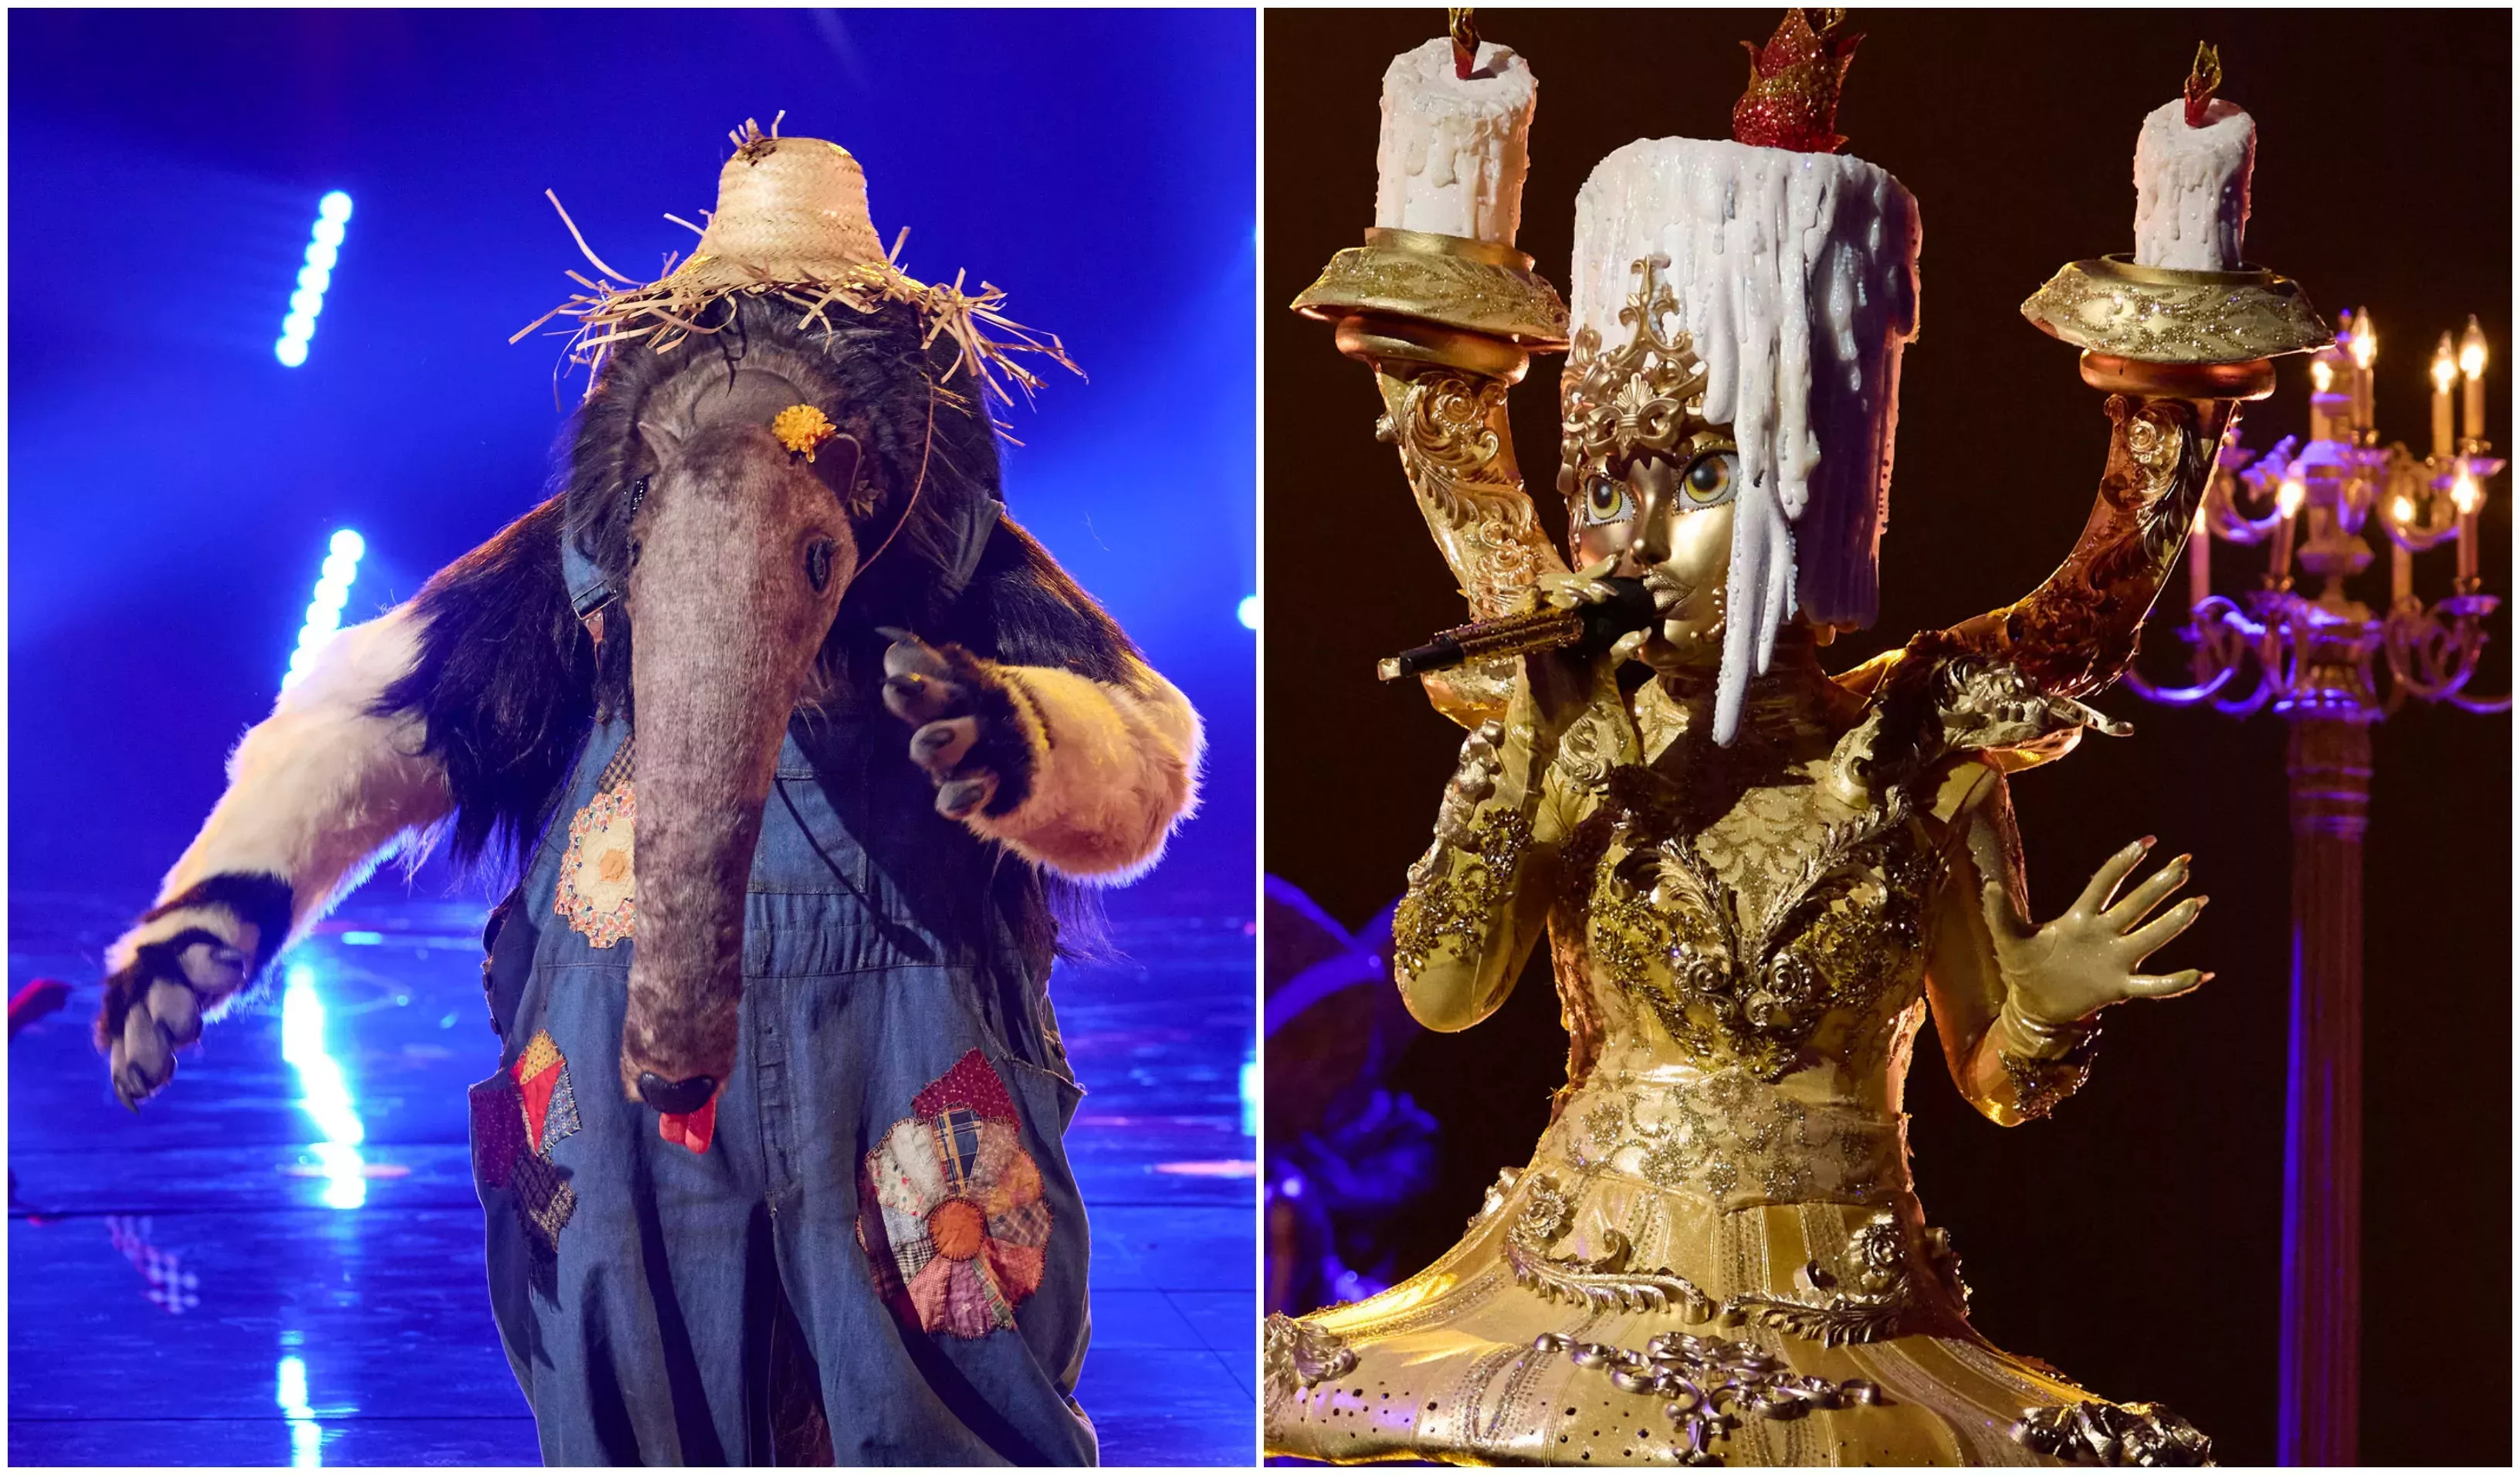 

	
		'El cantante enmascarado' desvela la identidad del oso hormiguero y el candelabro: estos son los famosos bajo los disfraces
	
	